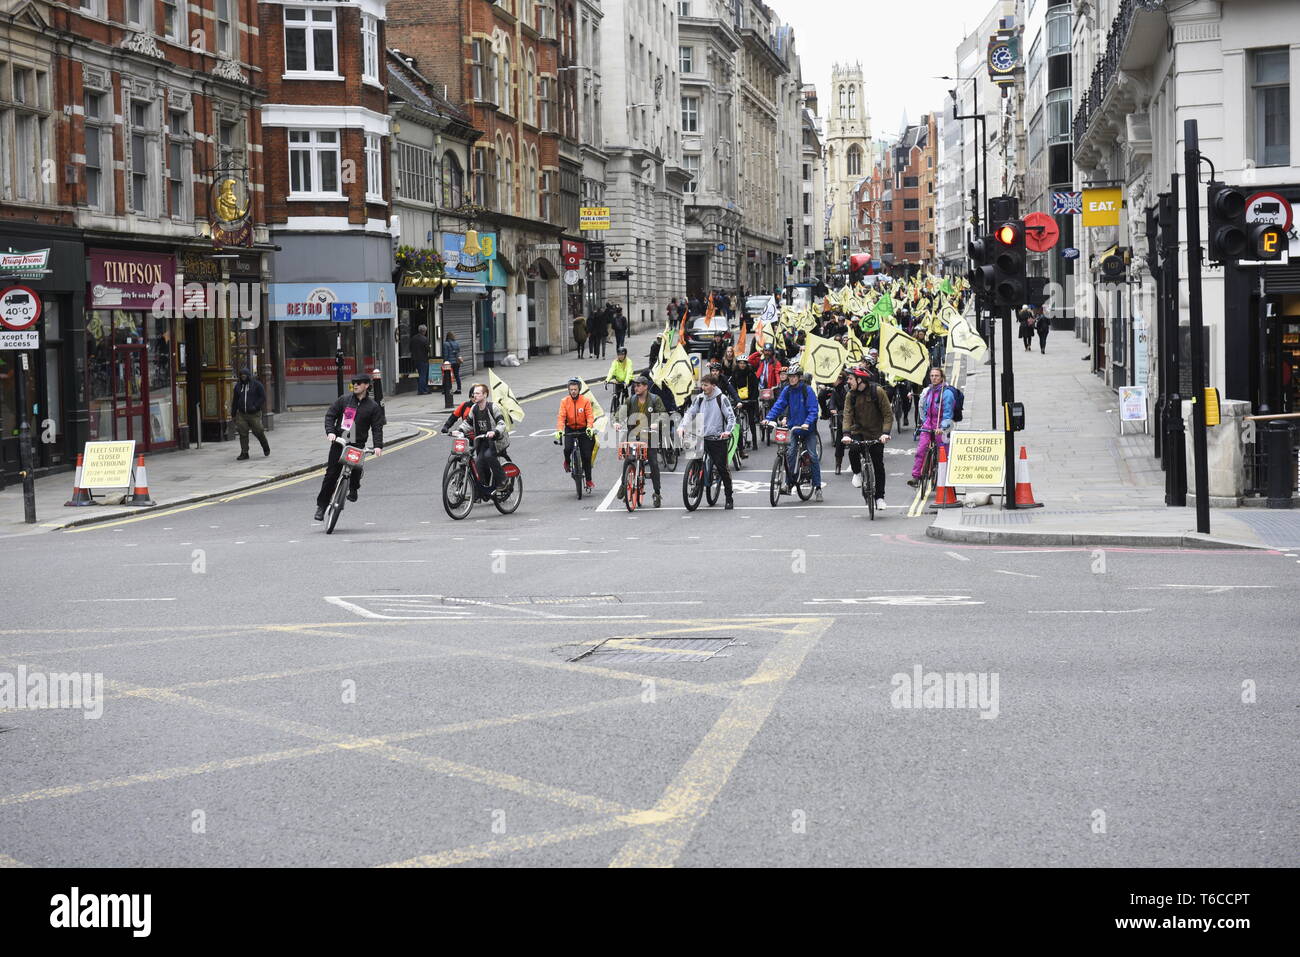 Rébellion Extinction 'Scyclistes' chaleureux centre de Londres pour protester contre la mort de l'Insecte - Extinction des manifestants ont organisé une rébellion "masse critique" de l'événement à vélo Banque D'Images